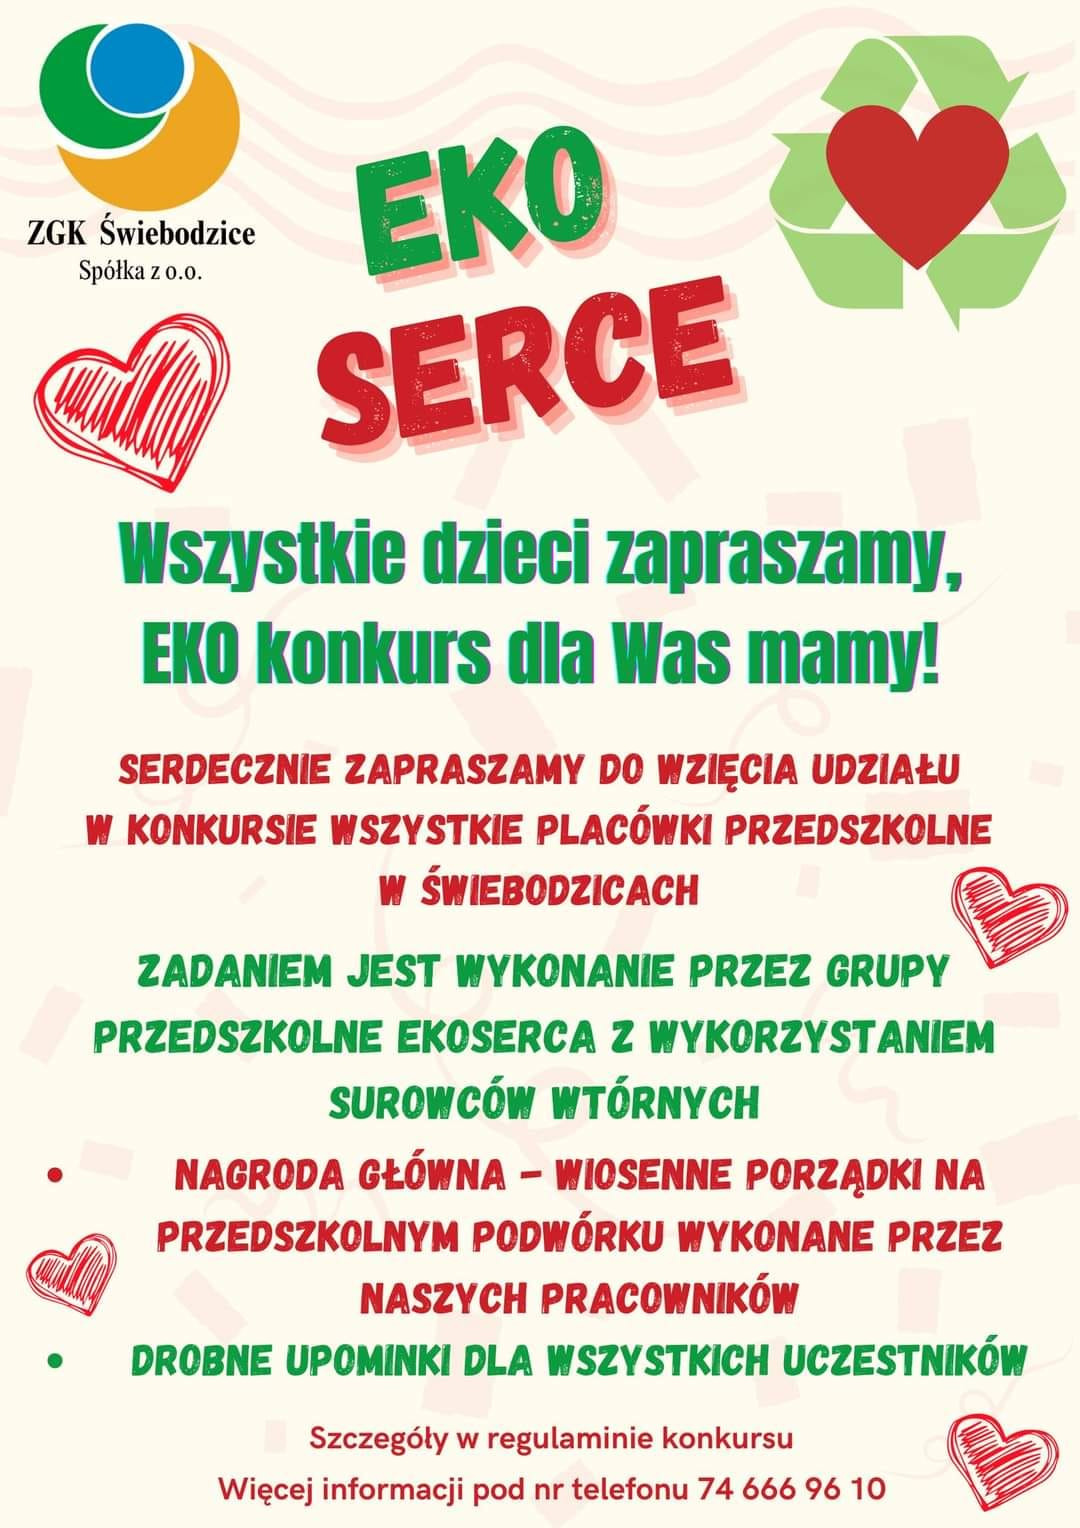 Eko Serce konkurs dla przedszkolaków - Obrazek 1